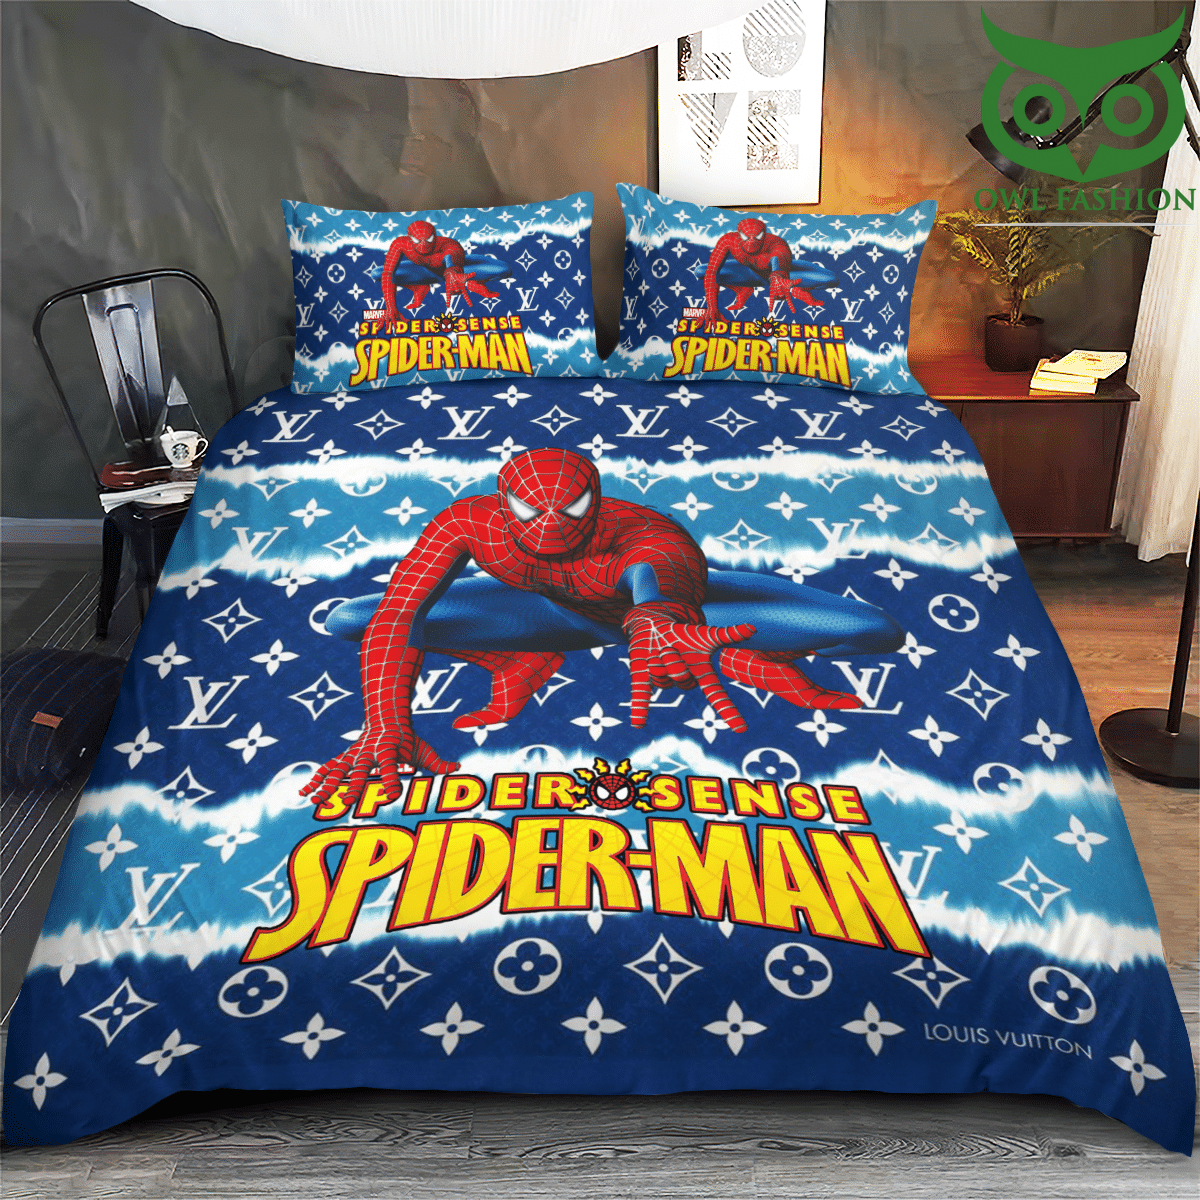 50 Louis Vuitton Spider sense Spiderman bedding set